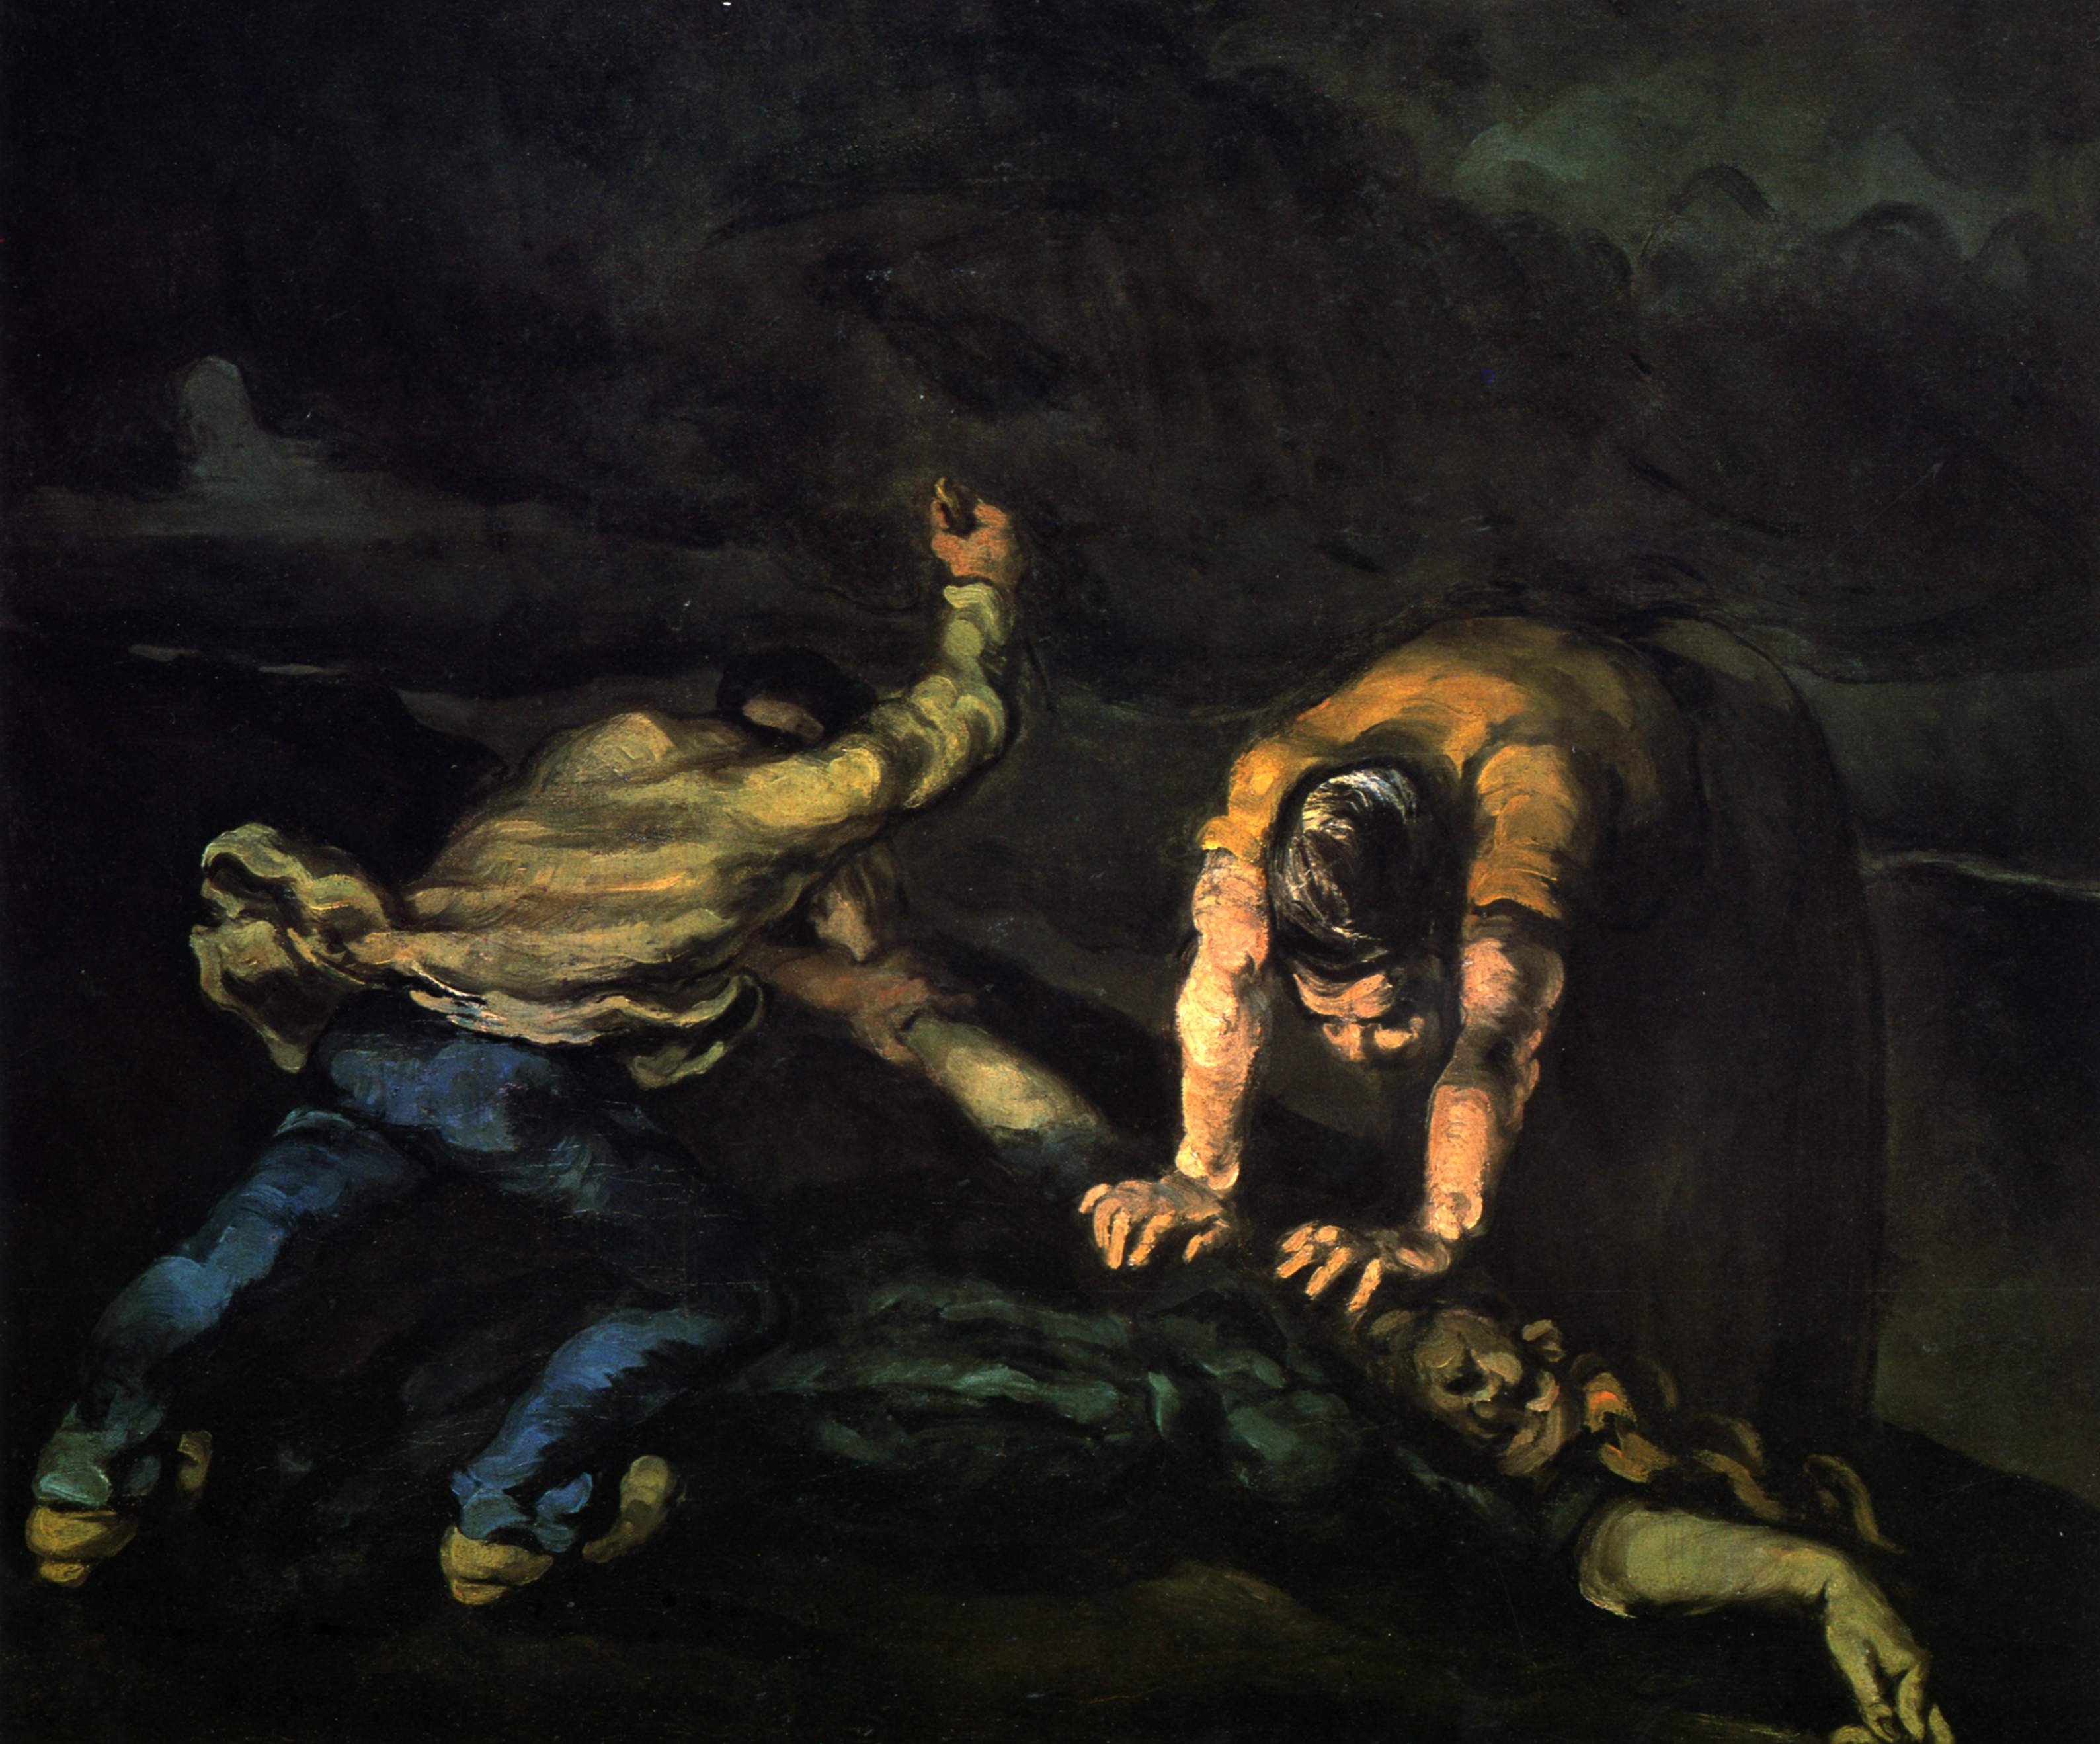 Поль Сезанн. Убийство. 1870